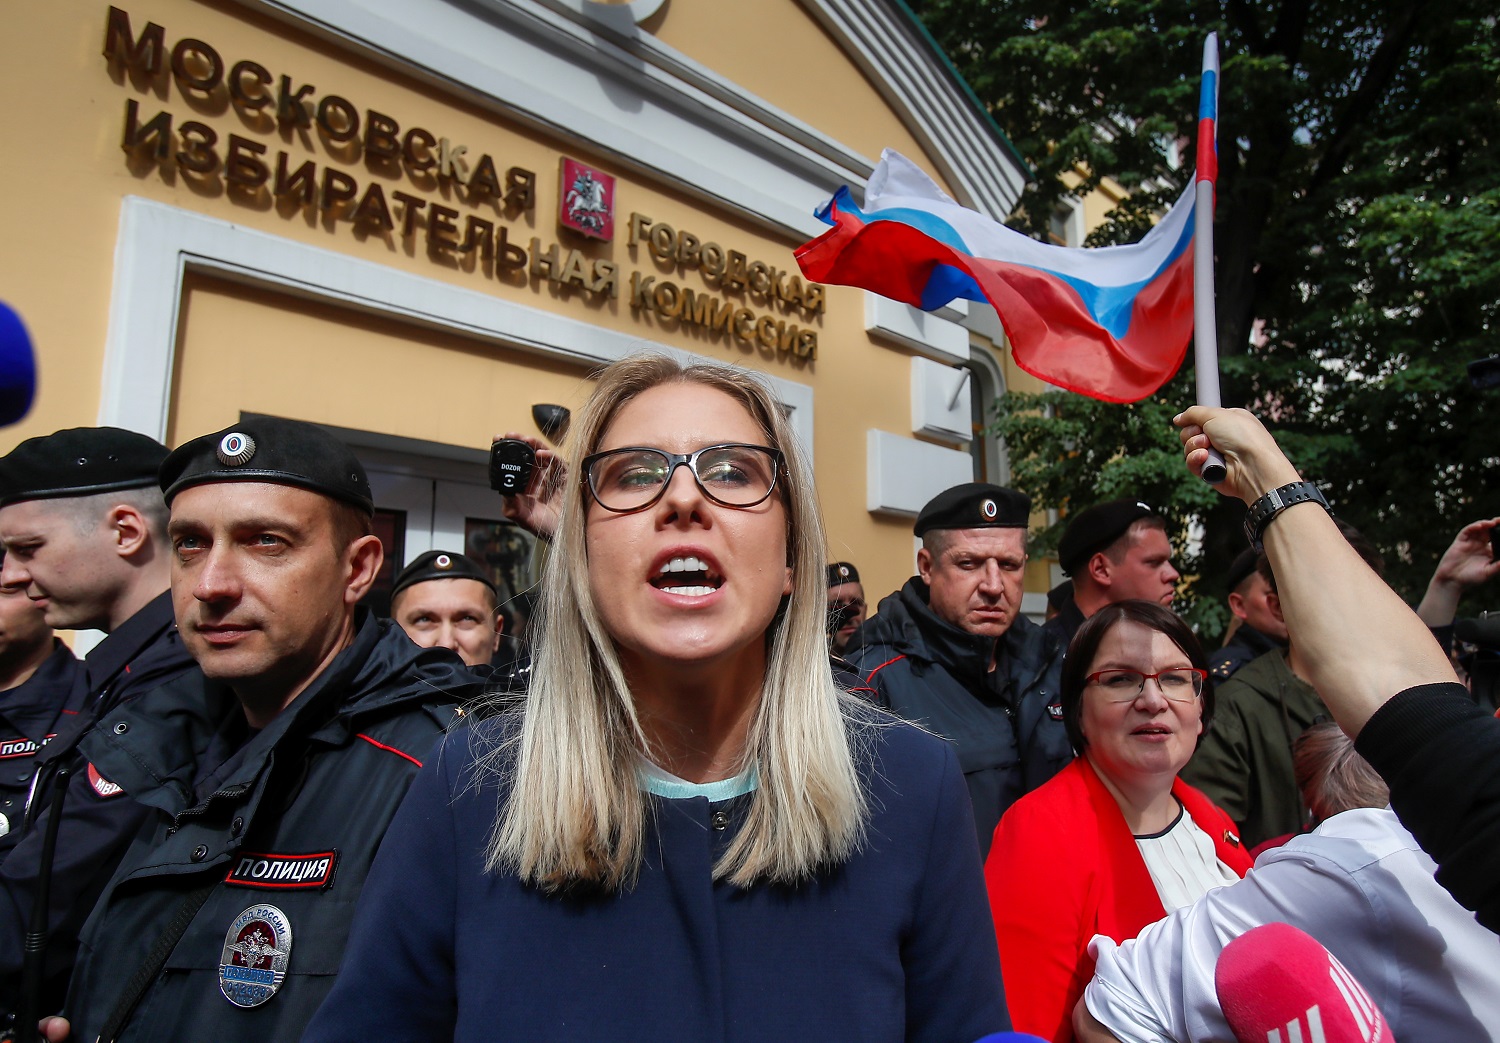  شخصية معارضة في مظاهرة أمام مكتب لجنة الانتخابات في مدينة موسكو. 14 يوليو 2019. رويترز / مكسيم شميتوف